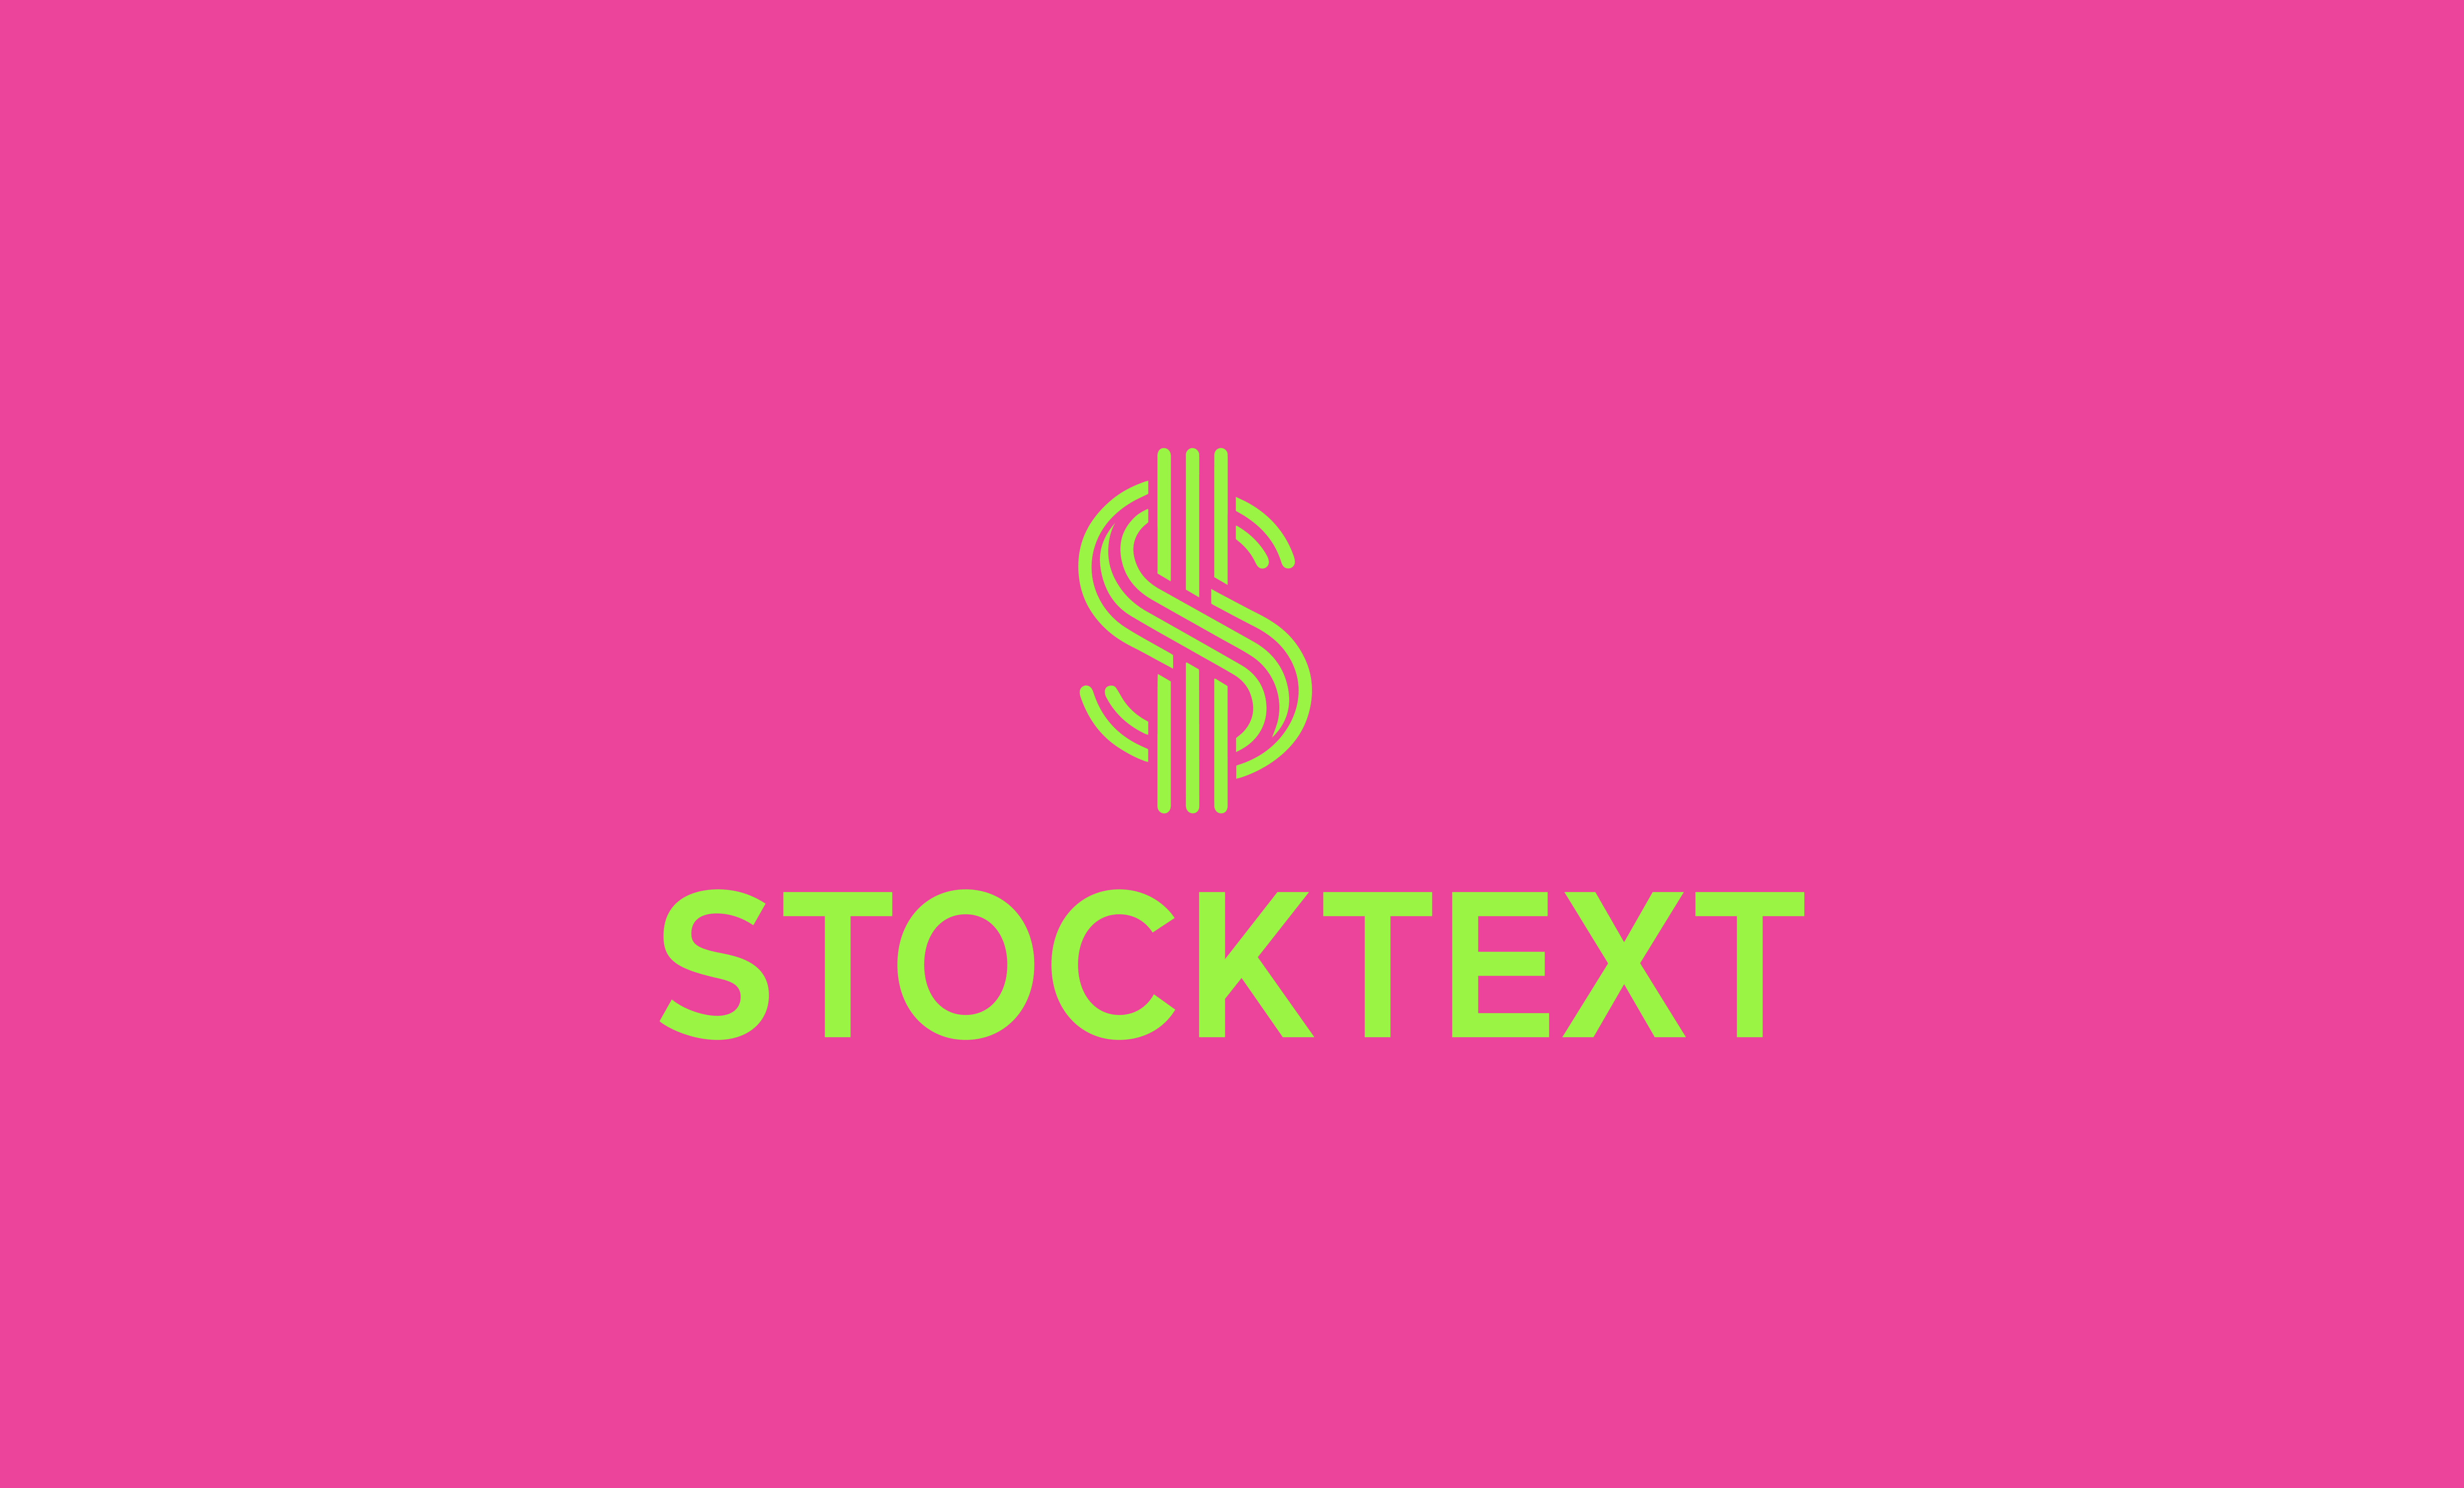 StockText